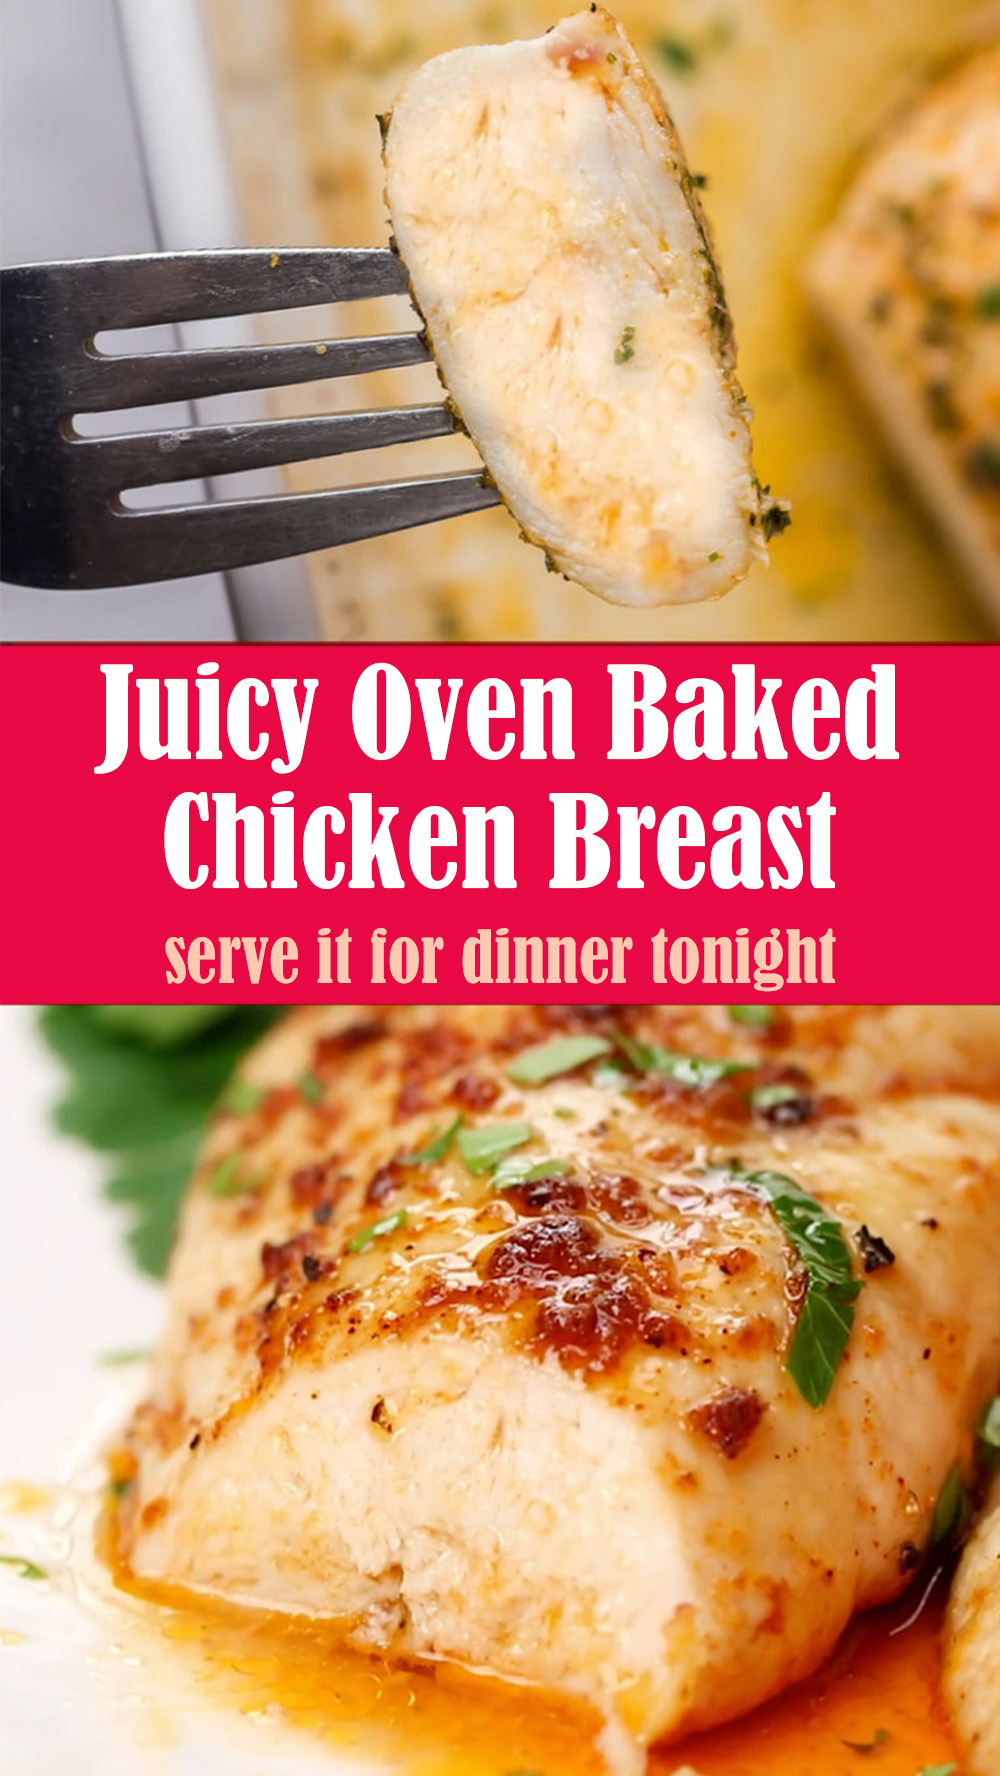 Juicy Oven Baked Chicken Breast